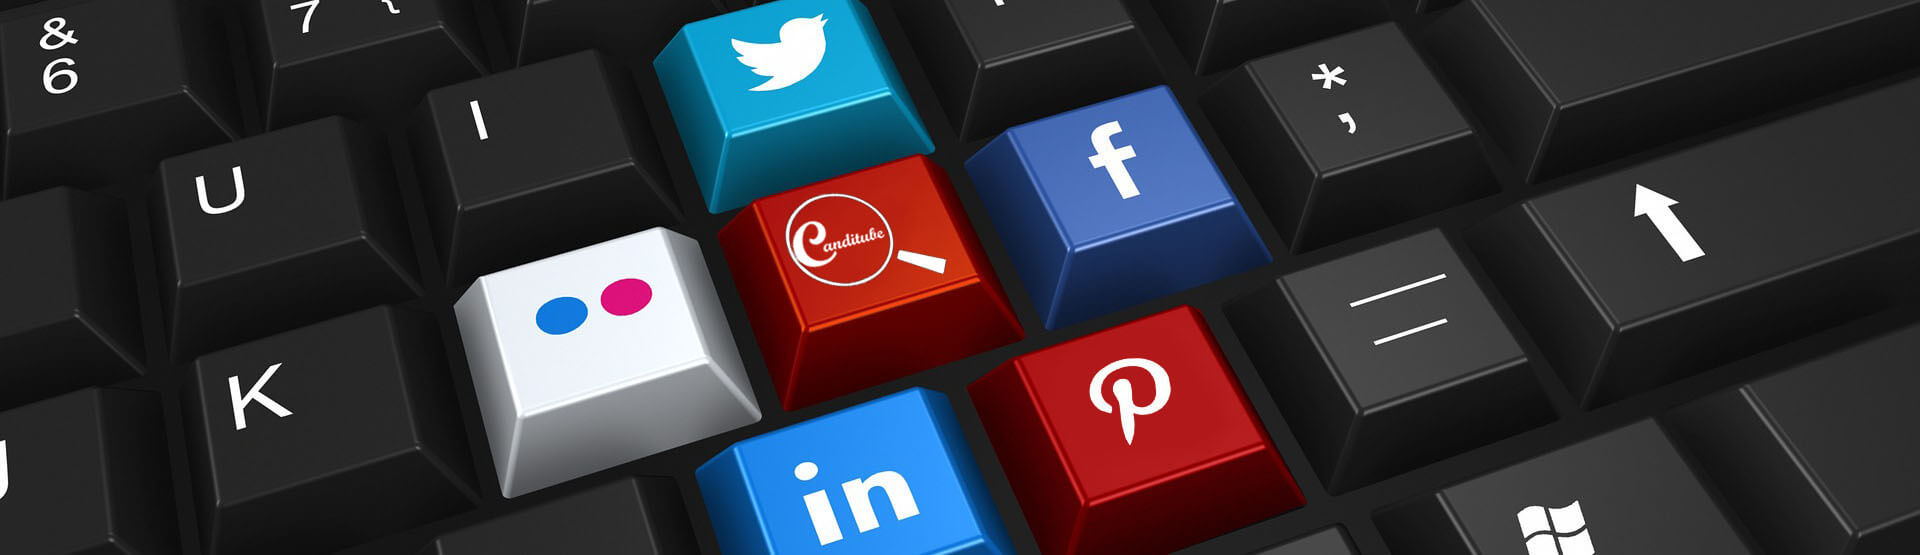 Un teclado negro con teclas de colores representando las principales redes sociales. En una de las teclas, se puede ver el logo de Canditube